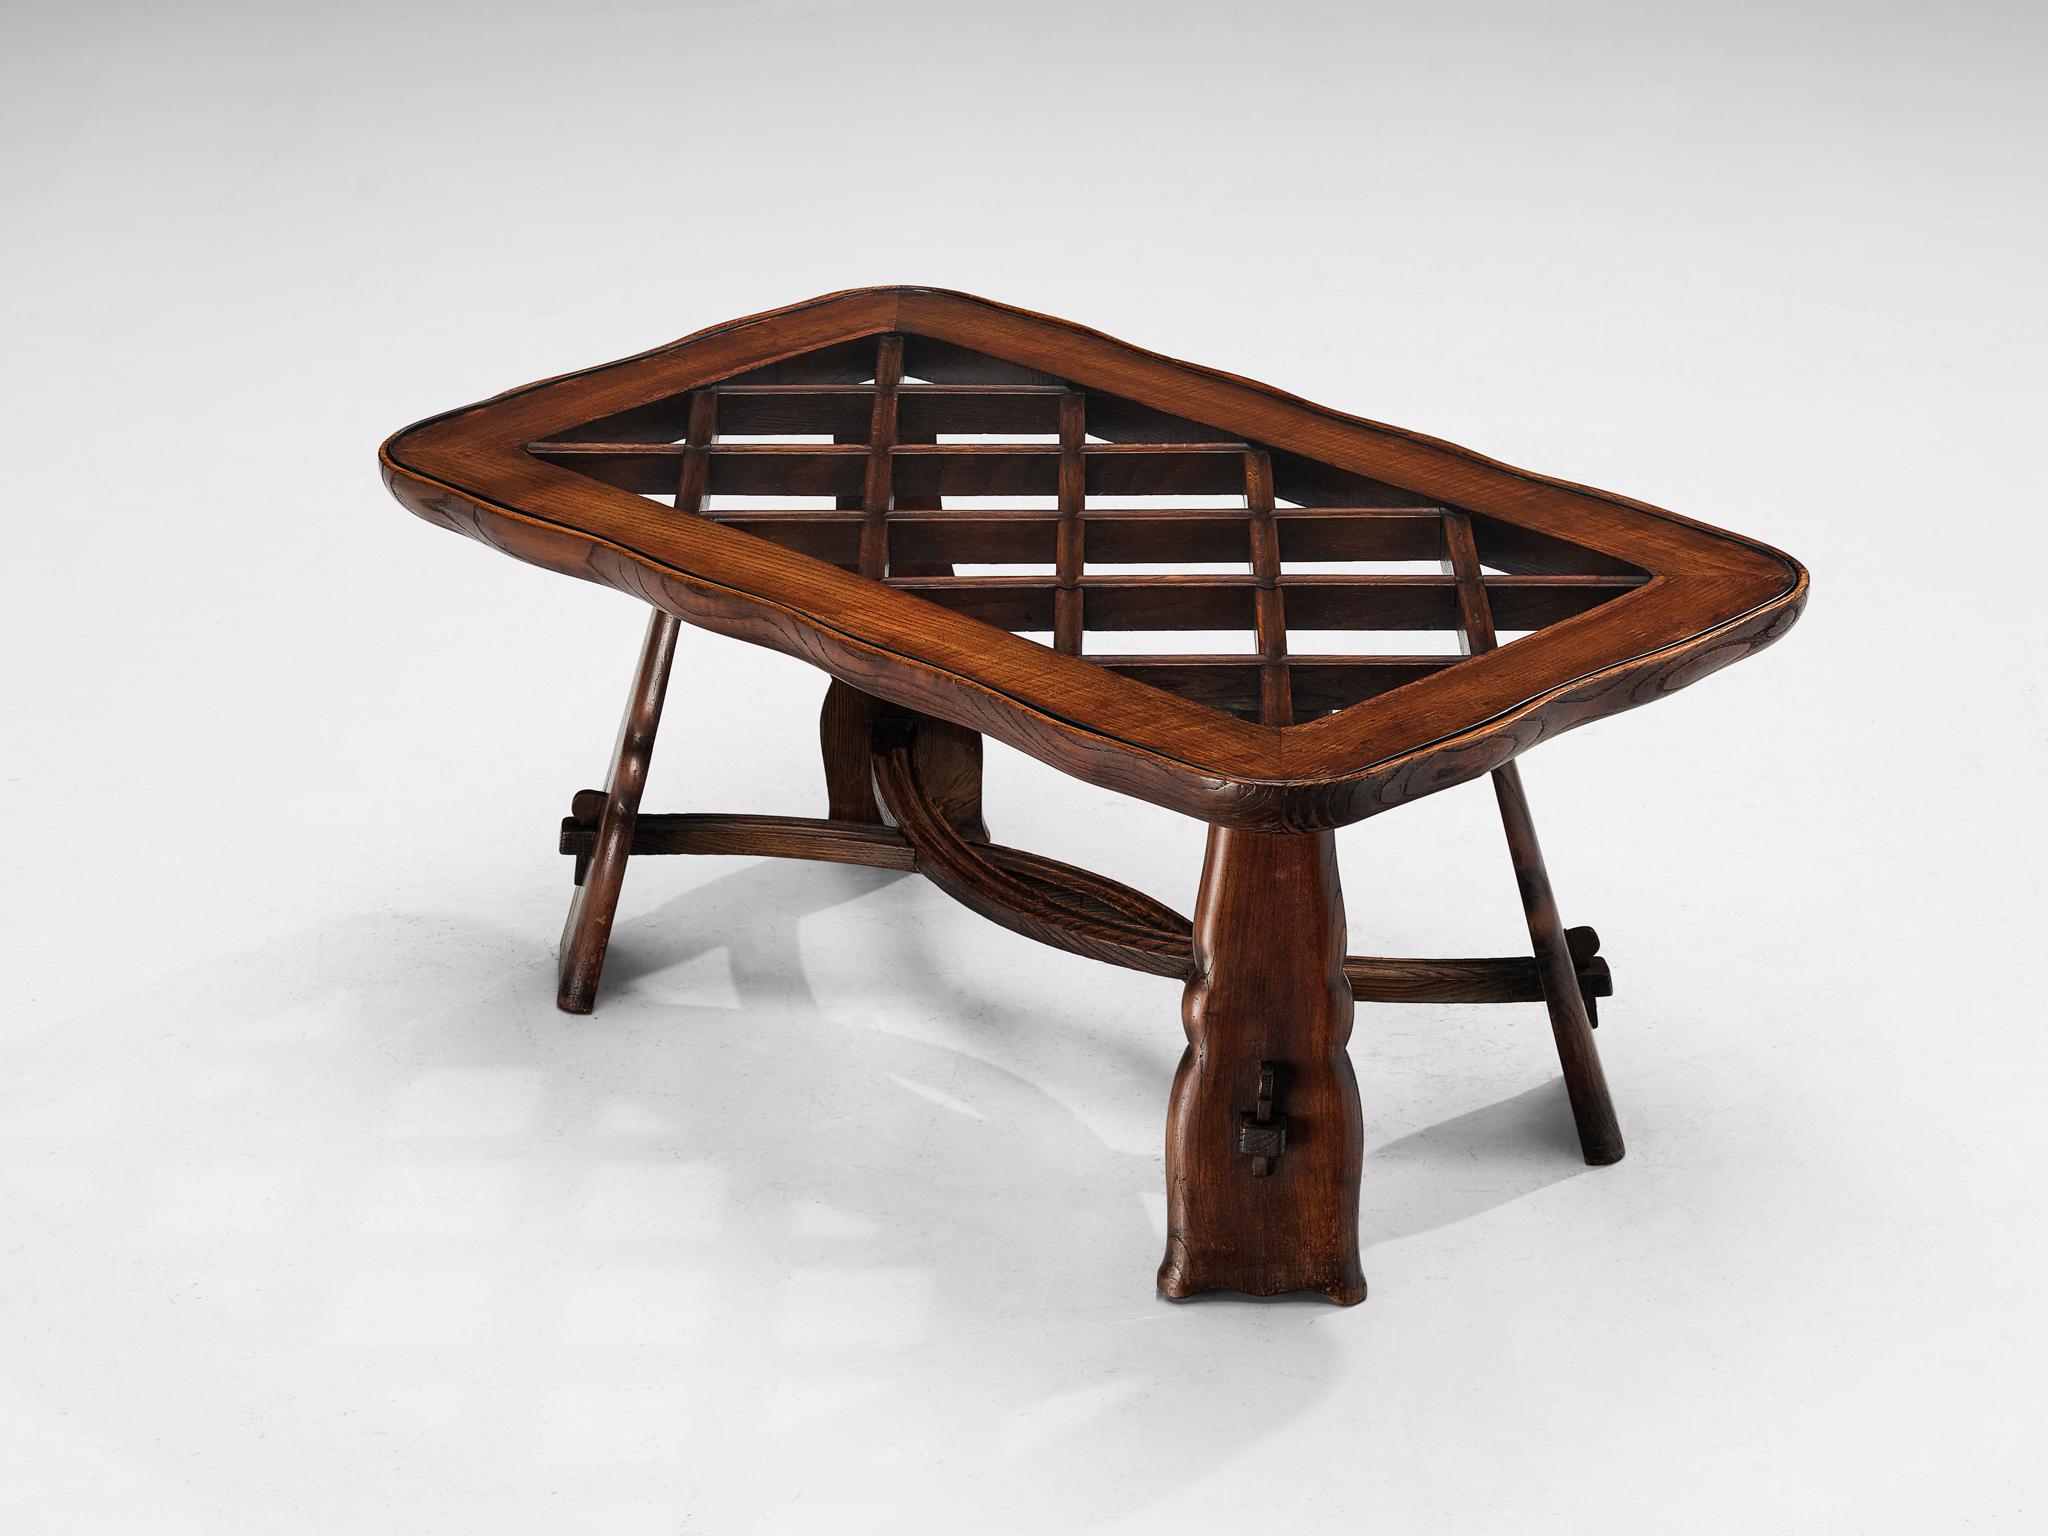 Valabrega Studio, table basse, châtaigne, verre, Italie, vers 1935

Le Studio de meubles Valabrega prouve une fois de plus son grand sens de la matérialisation et de l'artisanat impeccable dont cette pièce est exemplaire. Le design de la table